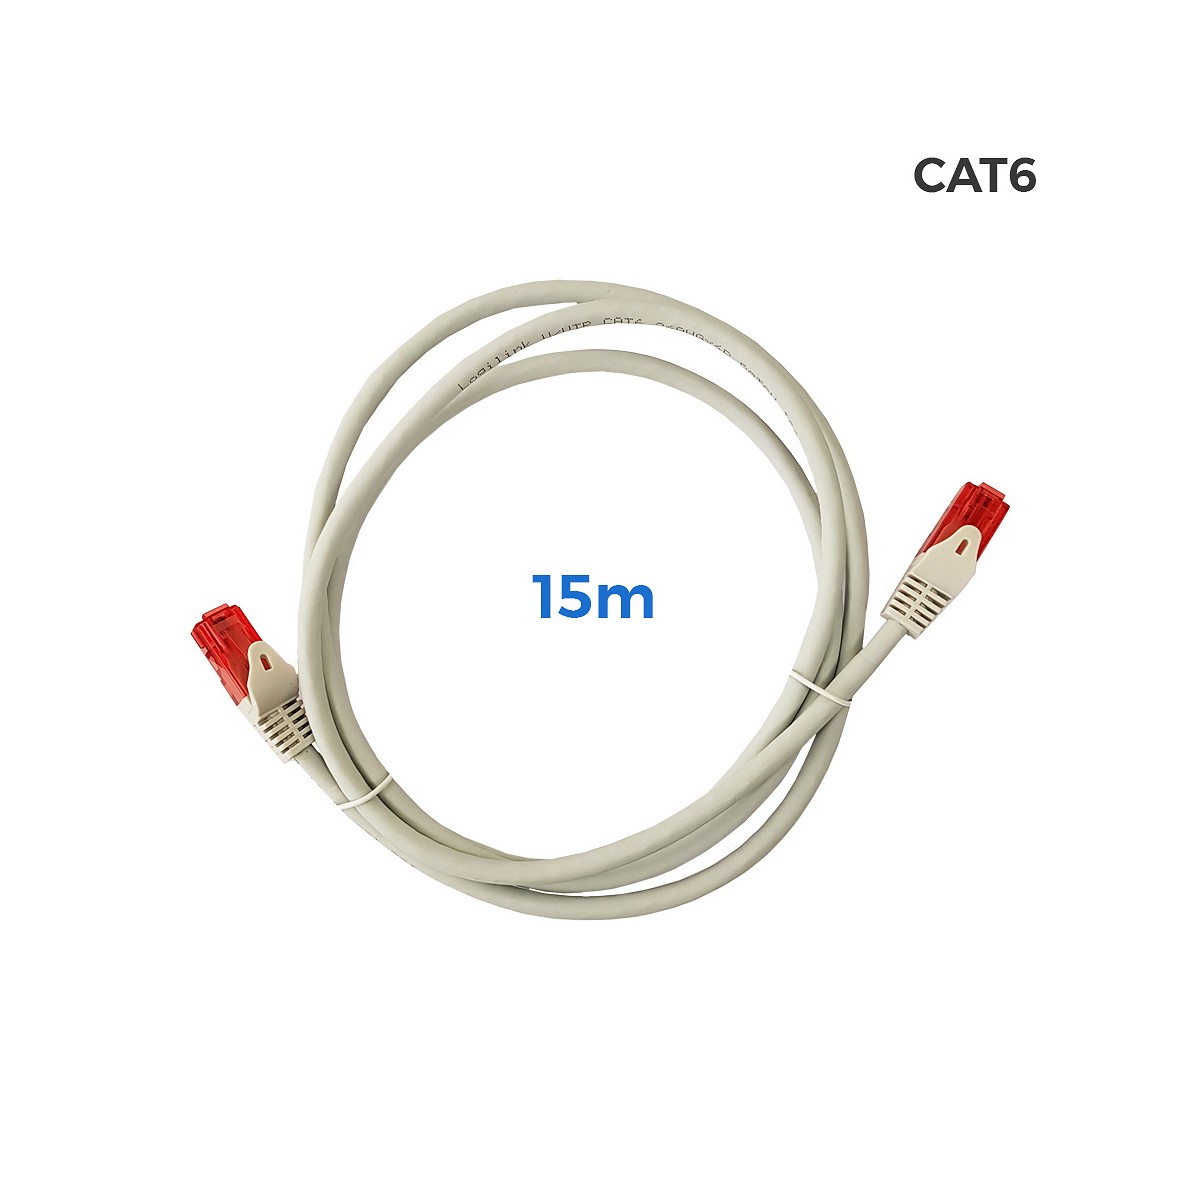 Cable utp cat.6 latiguillo rj45 cobre lszh gris 15m